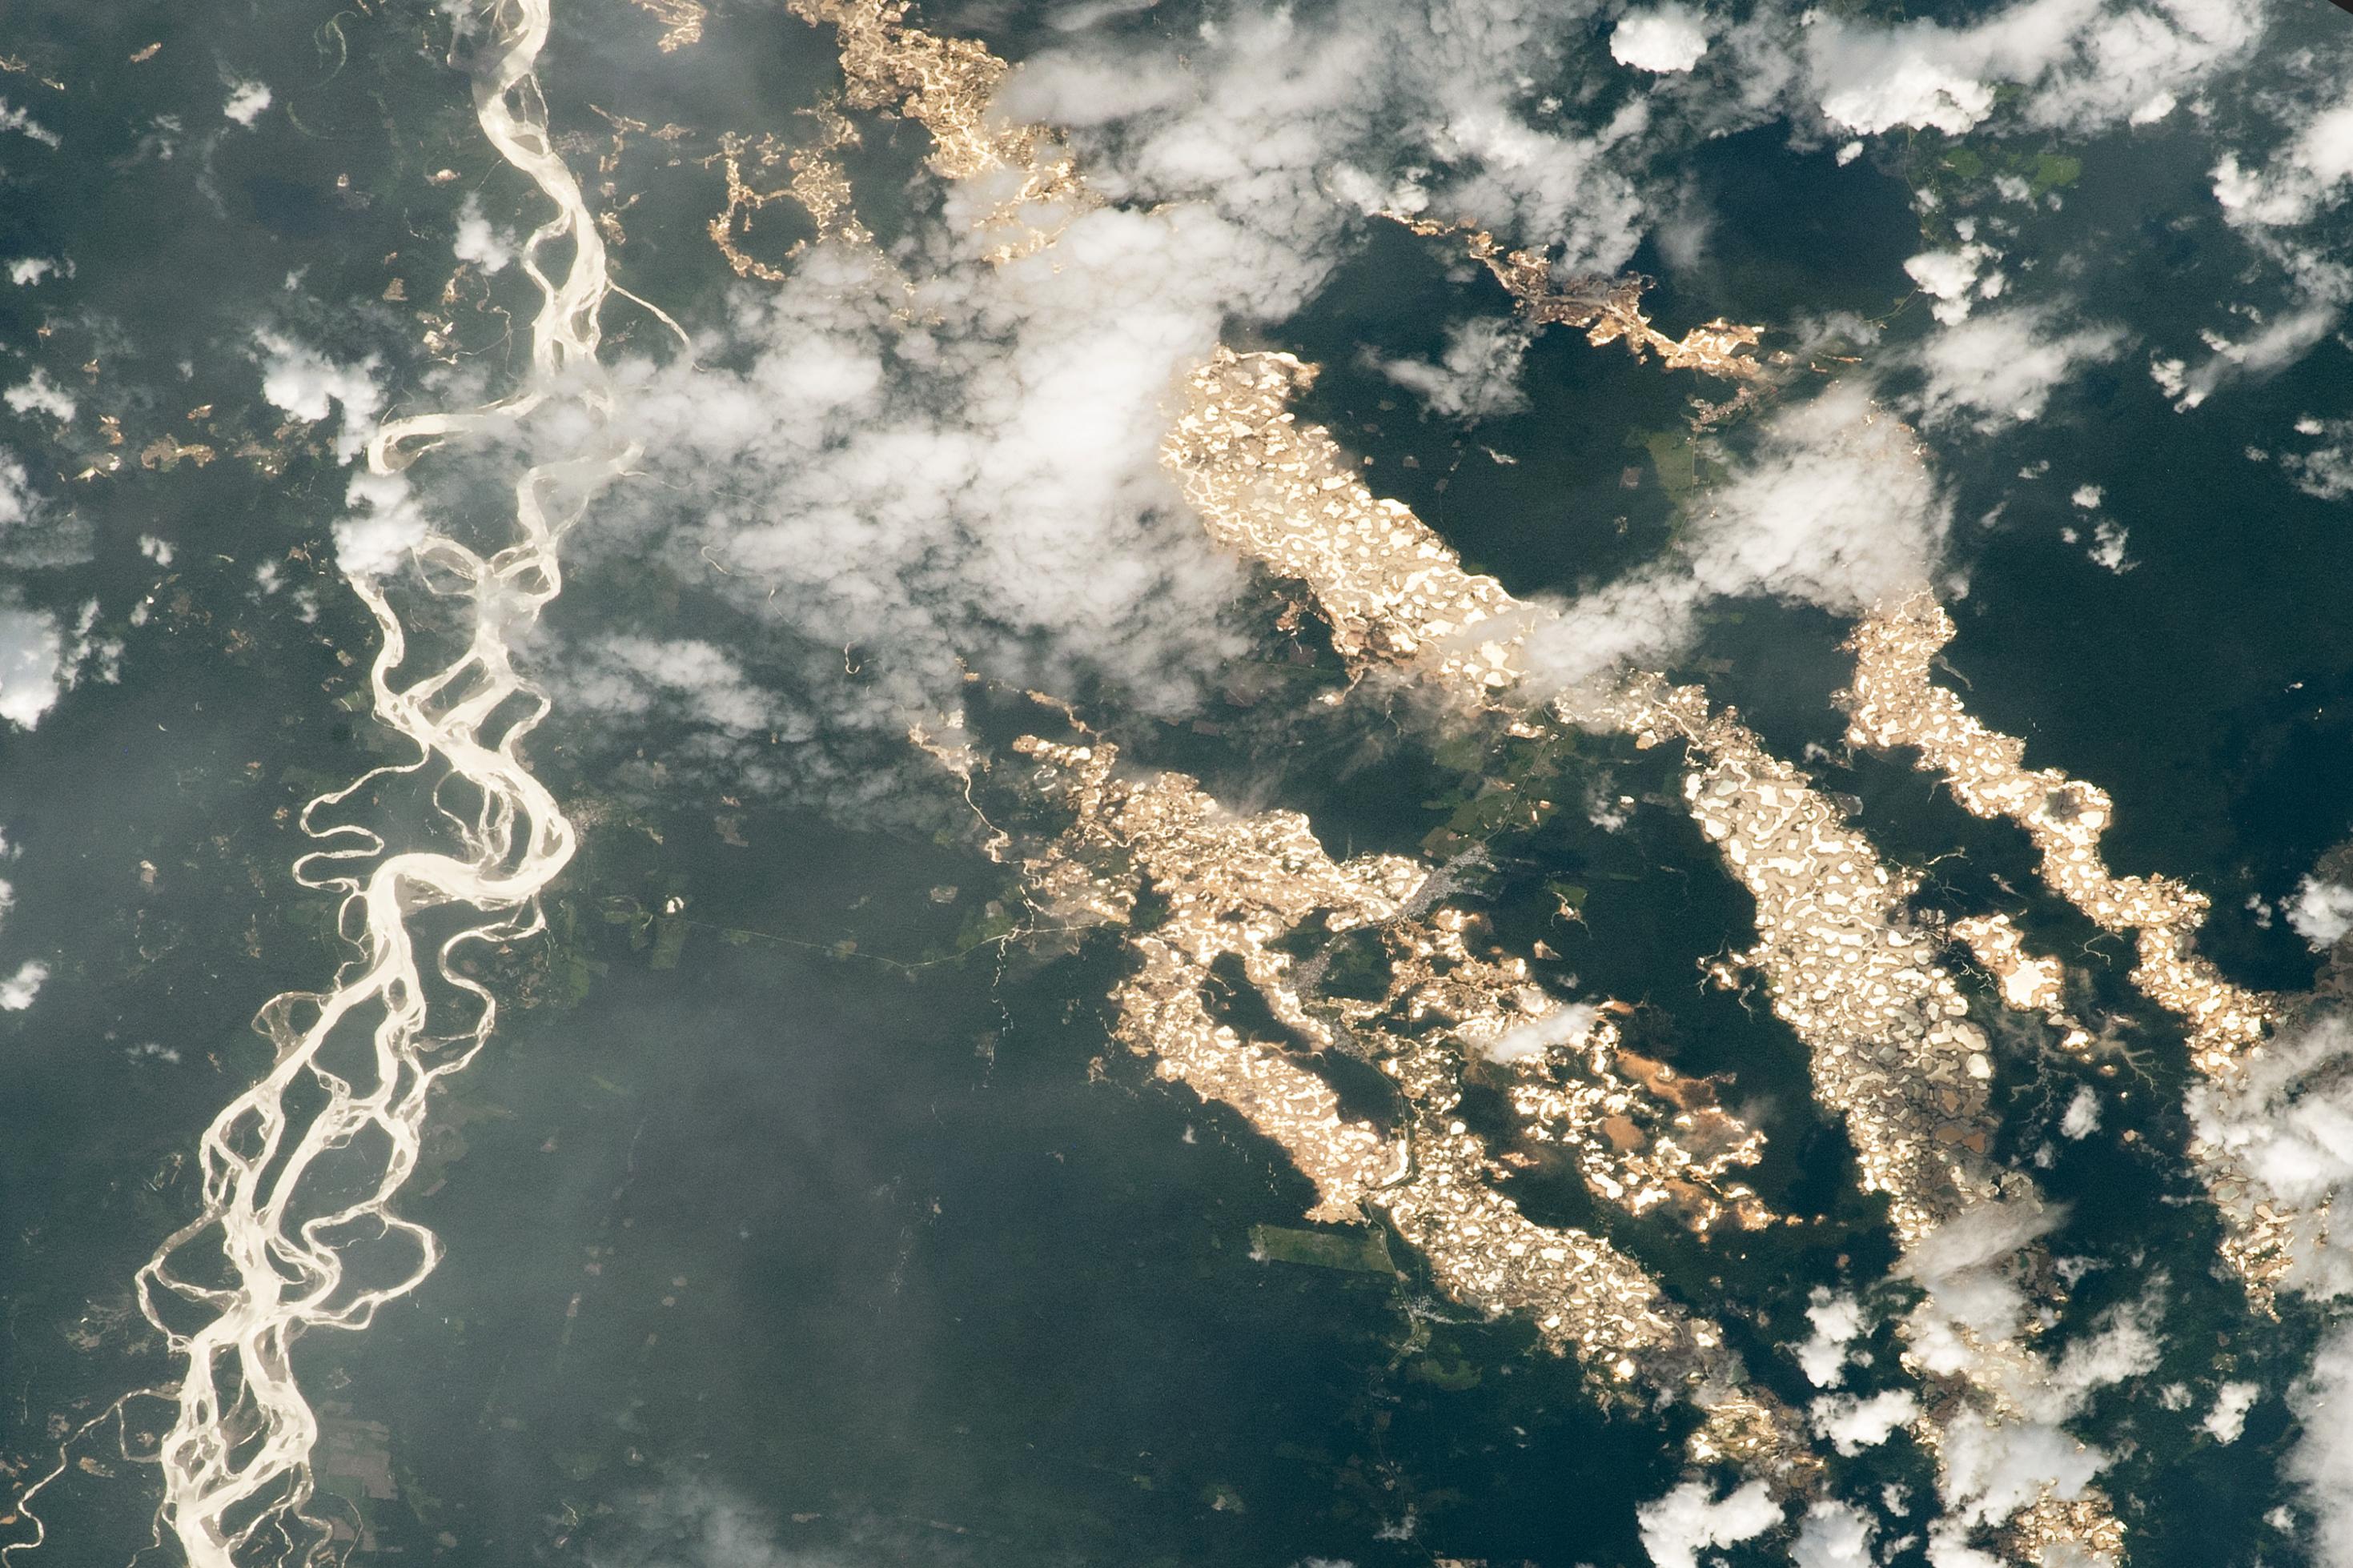 Satellitenbild von Goldbergbau in einer Regenwaldlandschaft